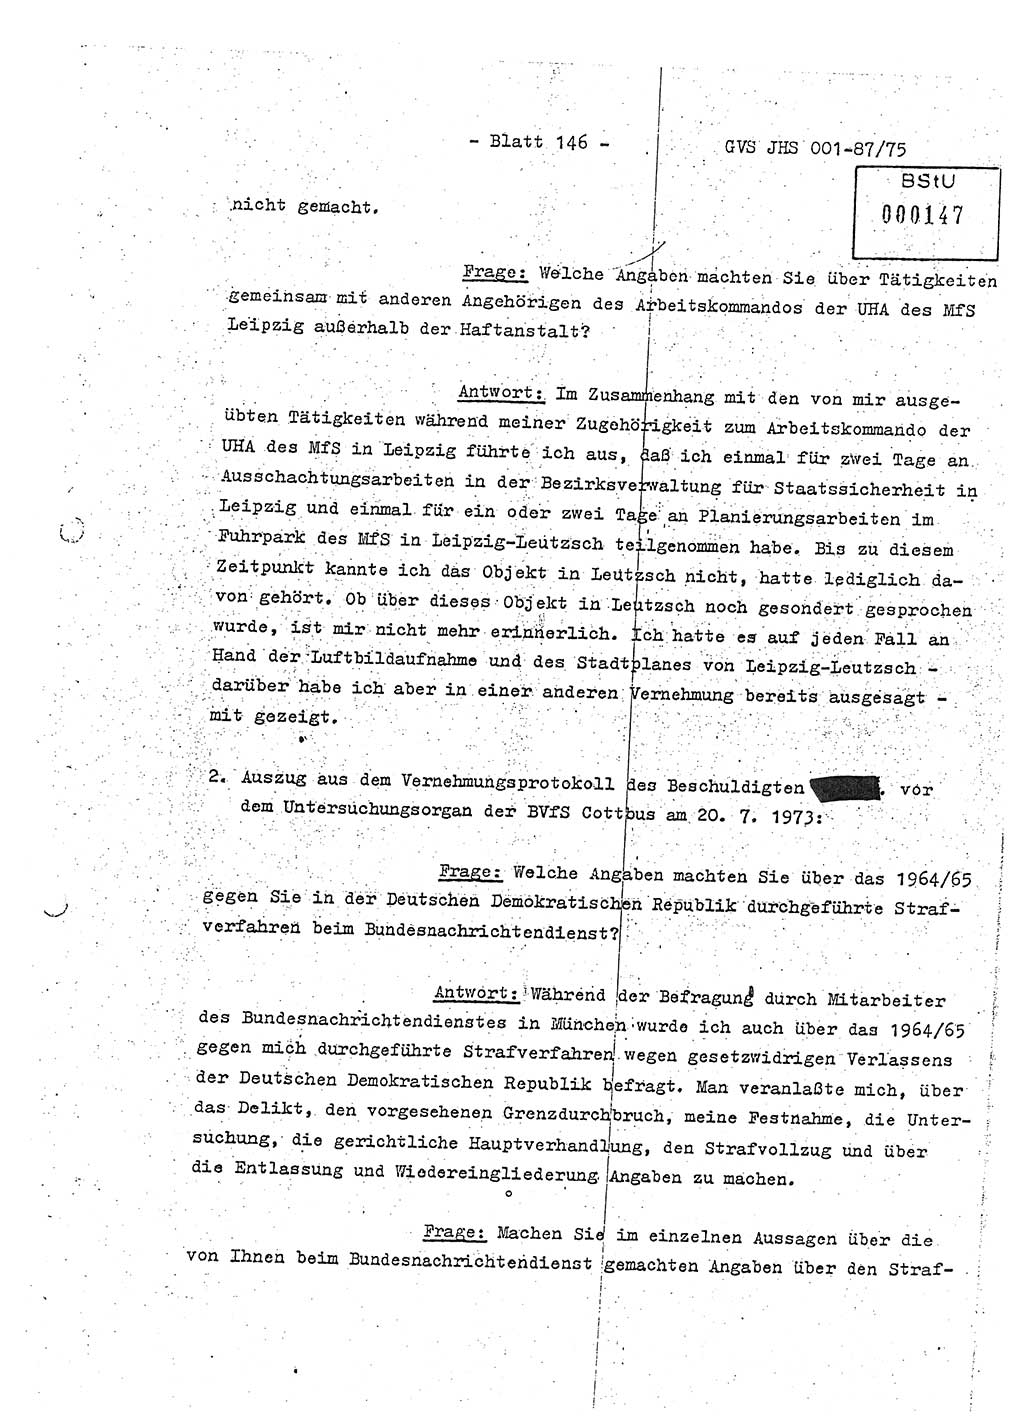 Diplomarbeit Hauptmann Volkmar Heinz (Abt. ⅩⅣ), Oberleutnant Lothar Rüdiger (BV Lpz. Abt. Ⅺ), Ministerium für Staatssicherheit (MfS) [Deutsche Demokratische Republik (DDR)], Juristische Hochschule (JHS), Geheime Verschlußsache (GVS) o001-87/75, Potsdam 1975, Seite 146 (Dipl.-Arb. MfS DDR JHS GVS o001-87/75 1975, S. 146)